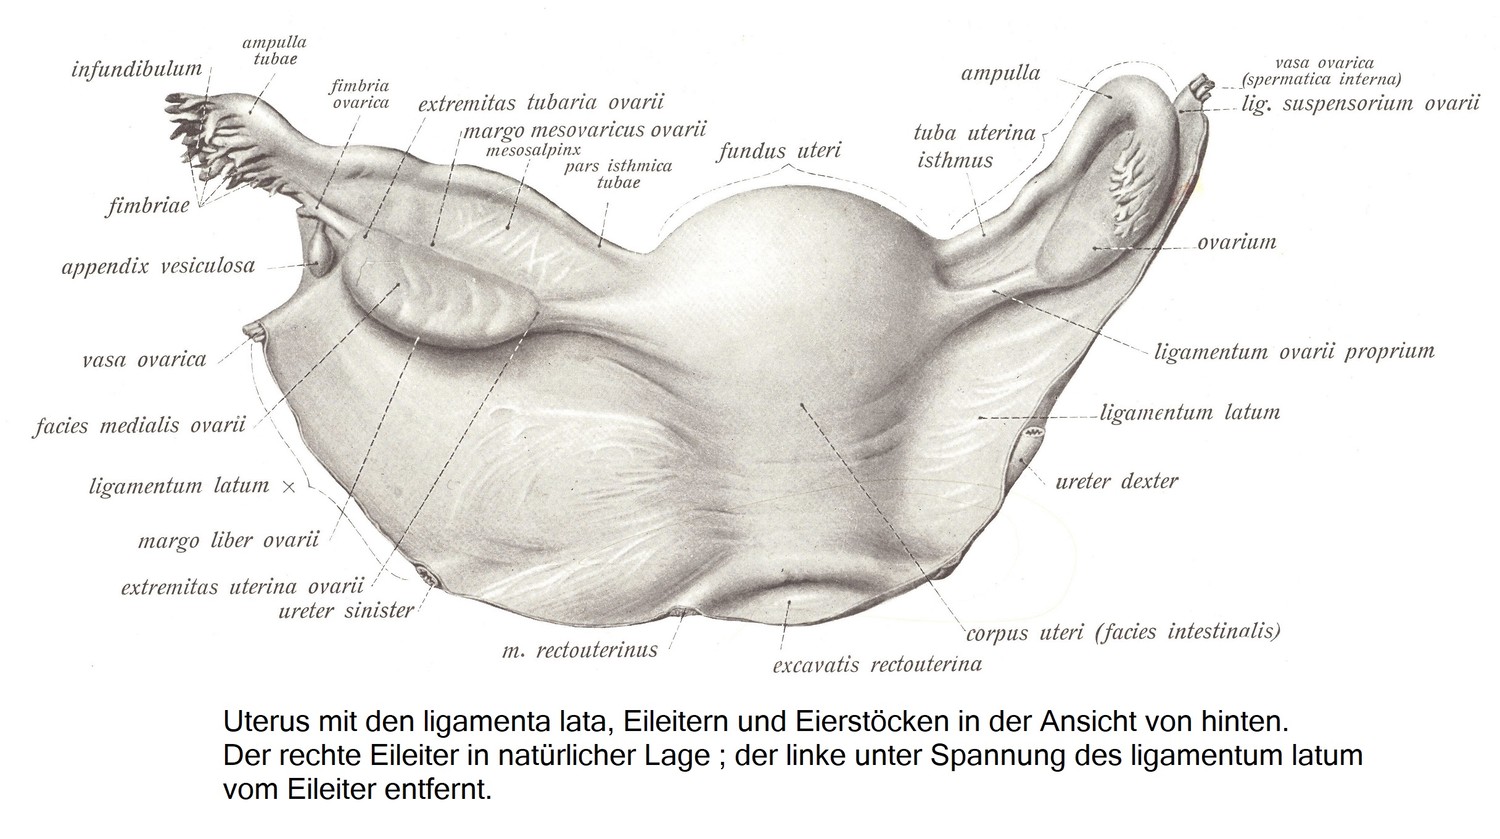 Der Eierstock, ovarium